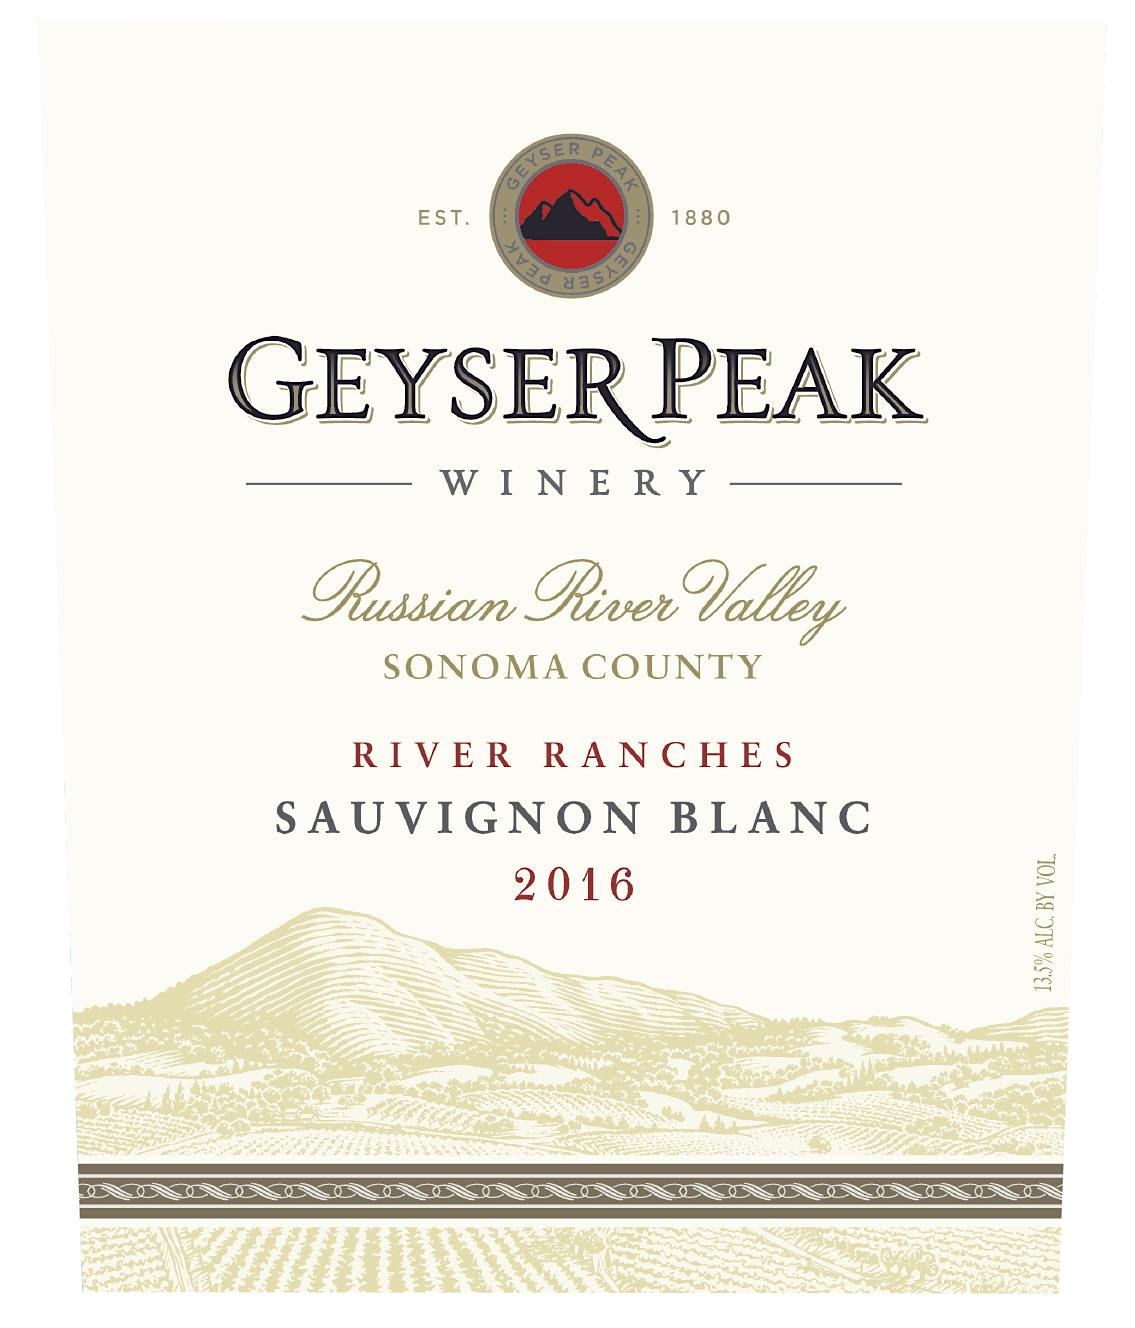 Label for Geyser Peak